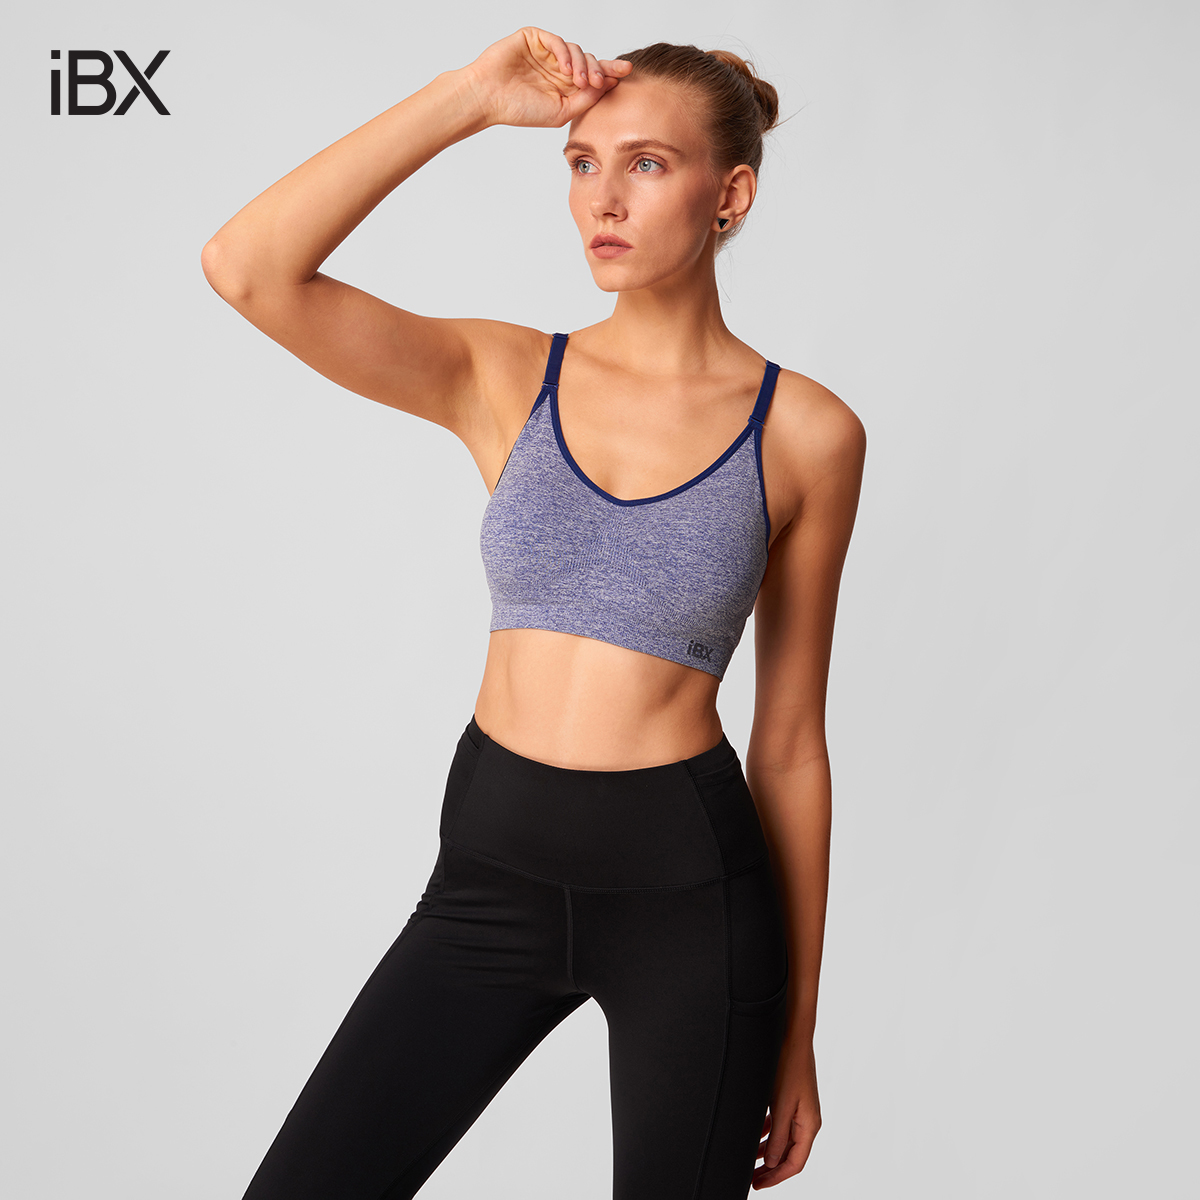 Áo ngực thể thao nữ seamless dây nhỏ iBX IBX018